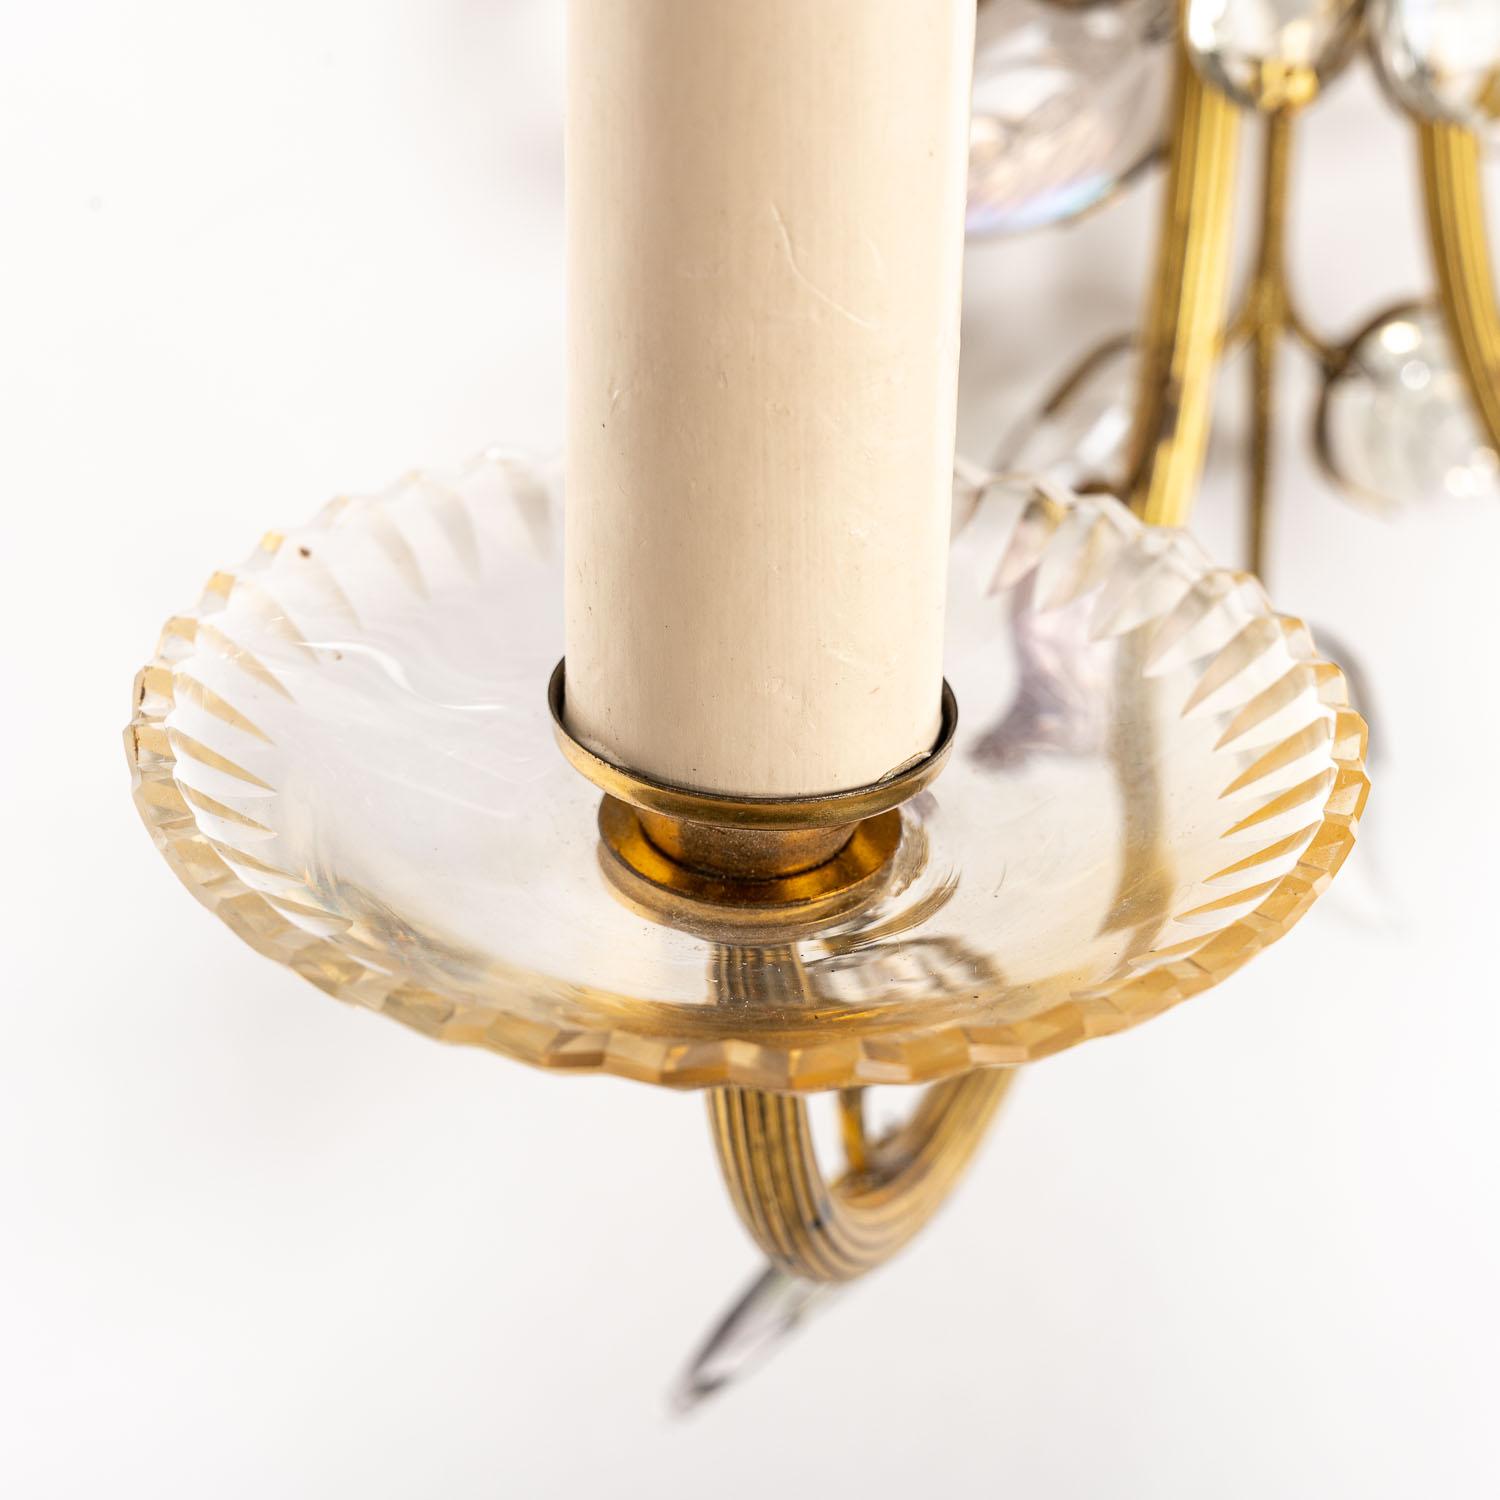 Cette lampe étonnante attribuée à la Maison Bagus allie un design naturaliste à un éclairage orné. Les branches décoratives et la base en laiton doré constituent le fondement de cette pièce d'inspiration florale. La « fleur » centrale est un mélange